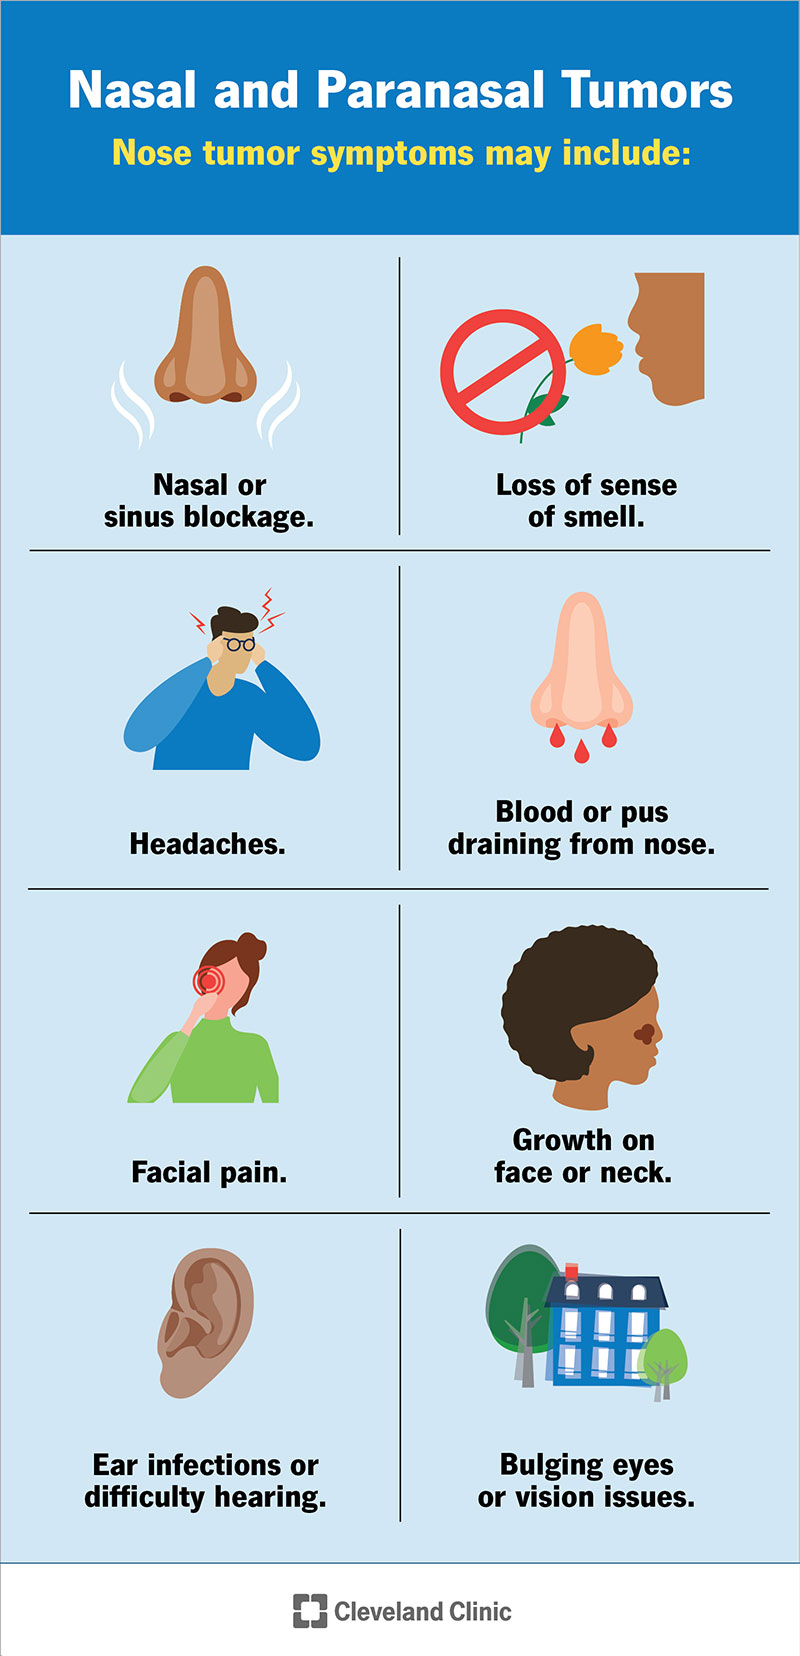 I sintomi nasali e paranasali comprendono mal di testa, dolore facciale e perdita del senso dell'olfatto.